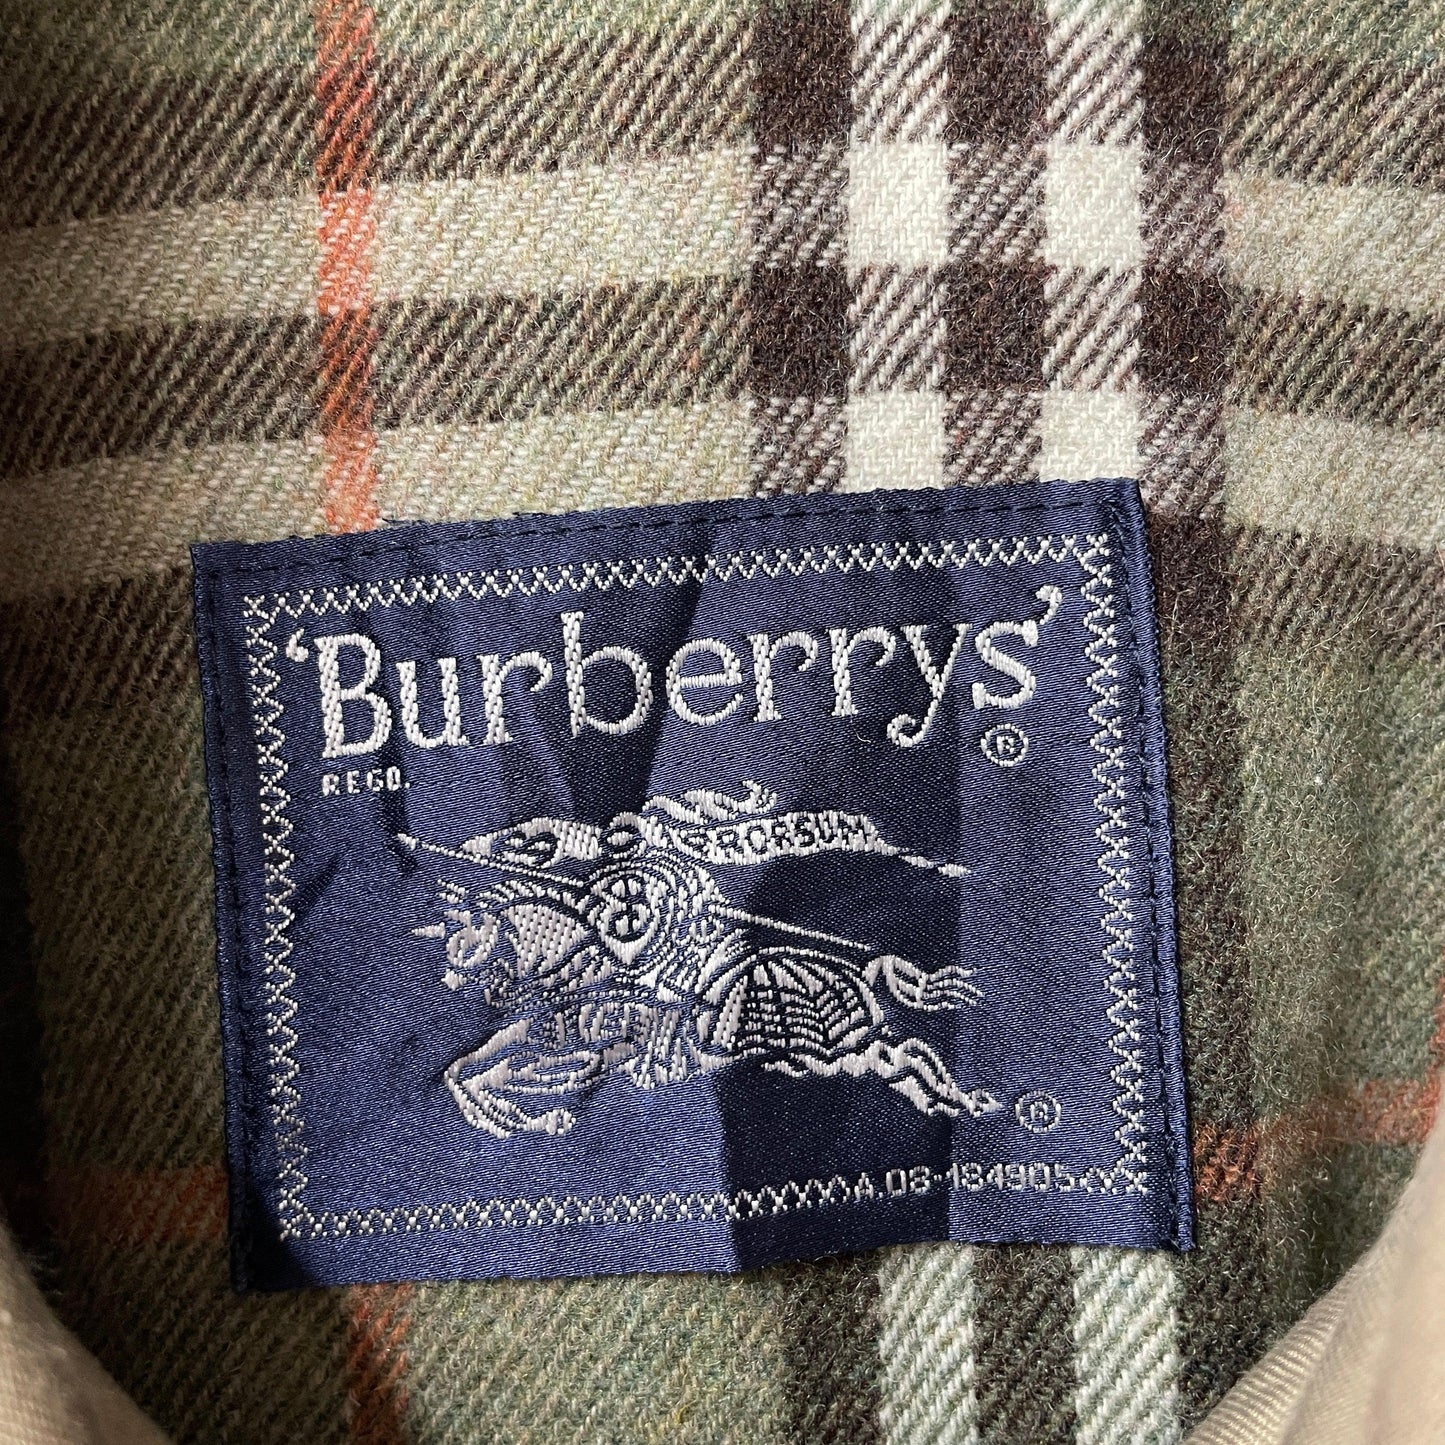 Burberrys jacket burberry jacket burberry